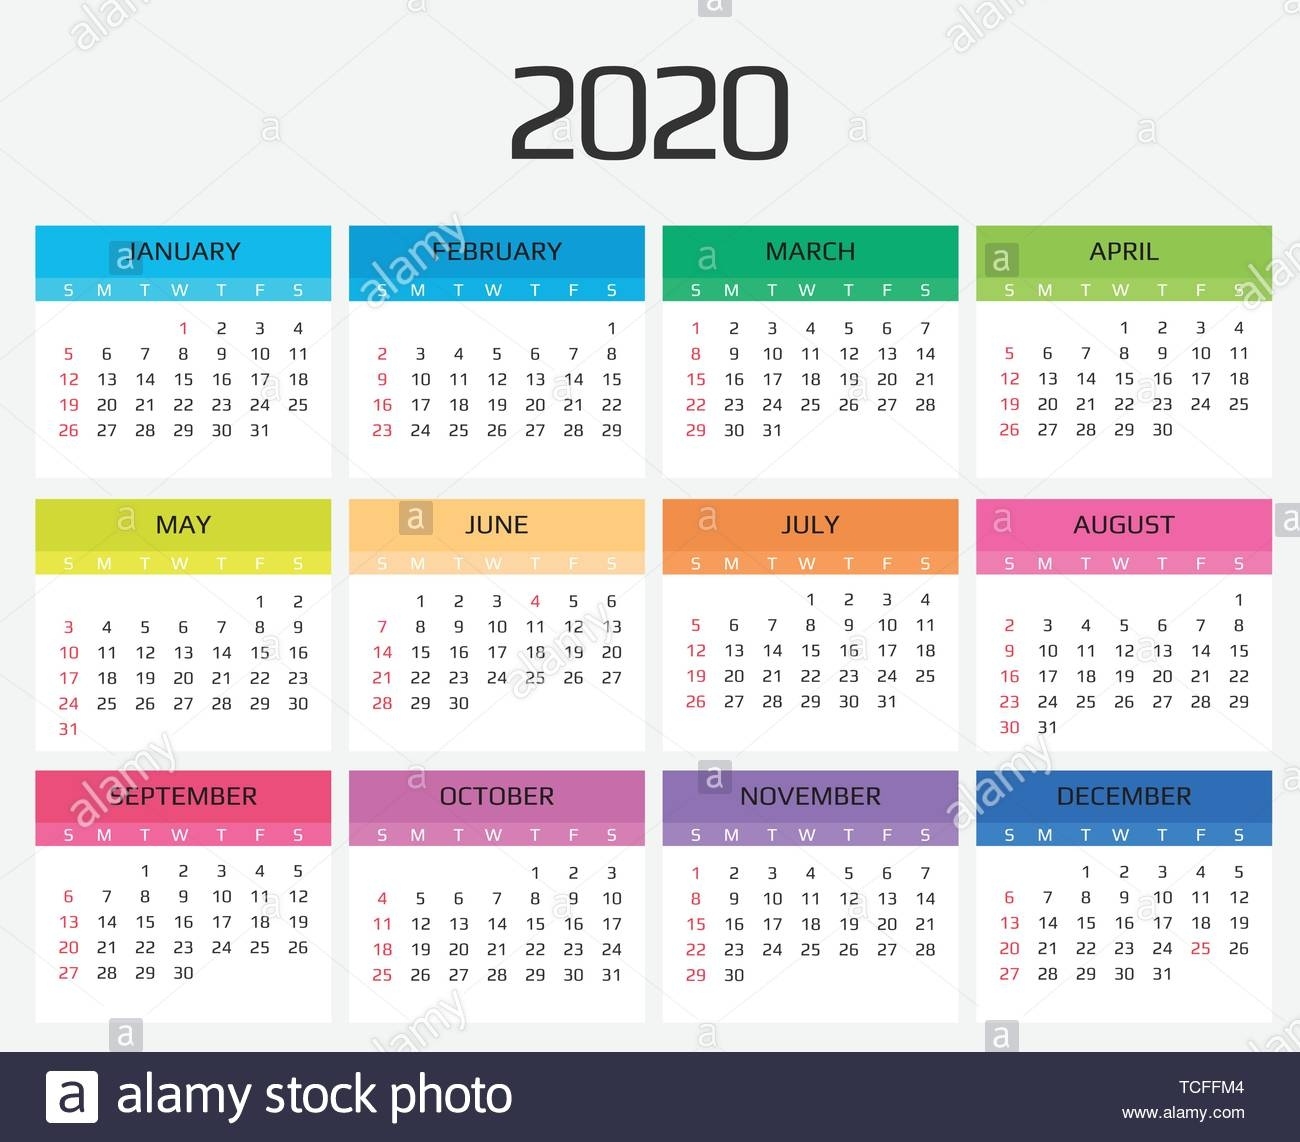 Calendar 2020 Template. 12 Months. Include Holiday Event 2020 Calendar Hong Kong Template